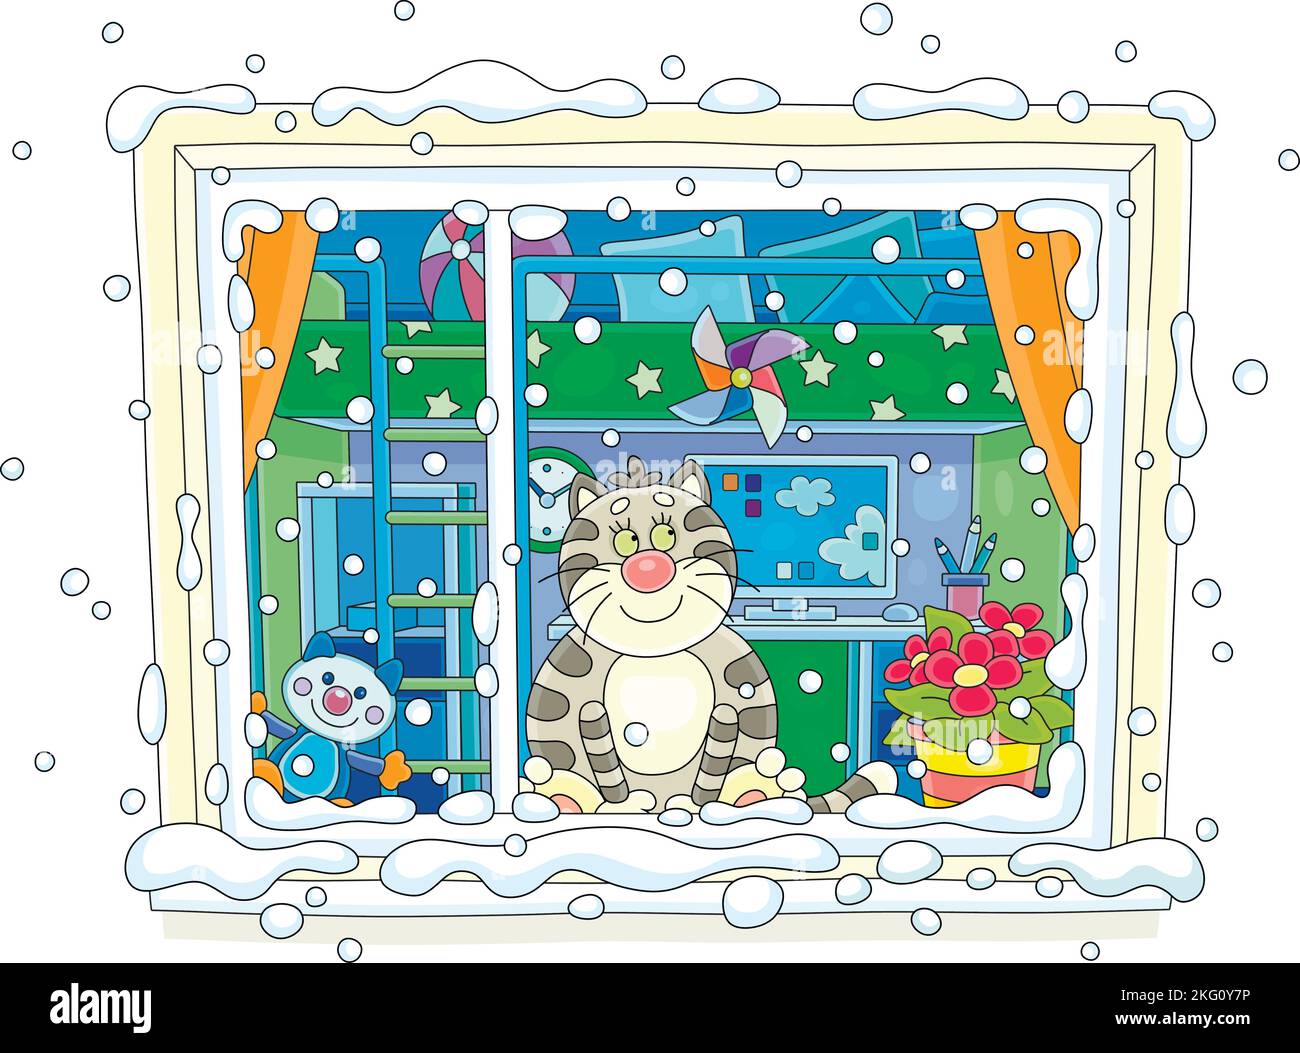 Lustig plump Hauskatze freundlich lächelnd, sitzt auf einer Fensterbank und beobachten fröhlich wirbelnden Schneeflocken vor einem Fenster an einem schönen Wintertag Stock Vektor